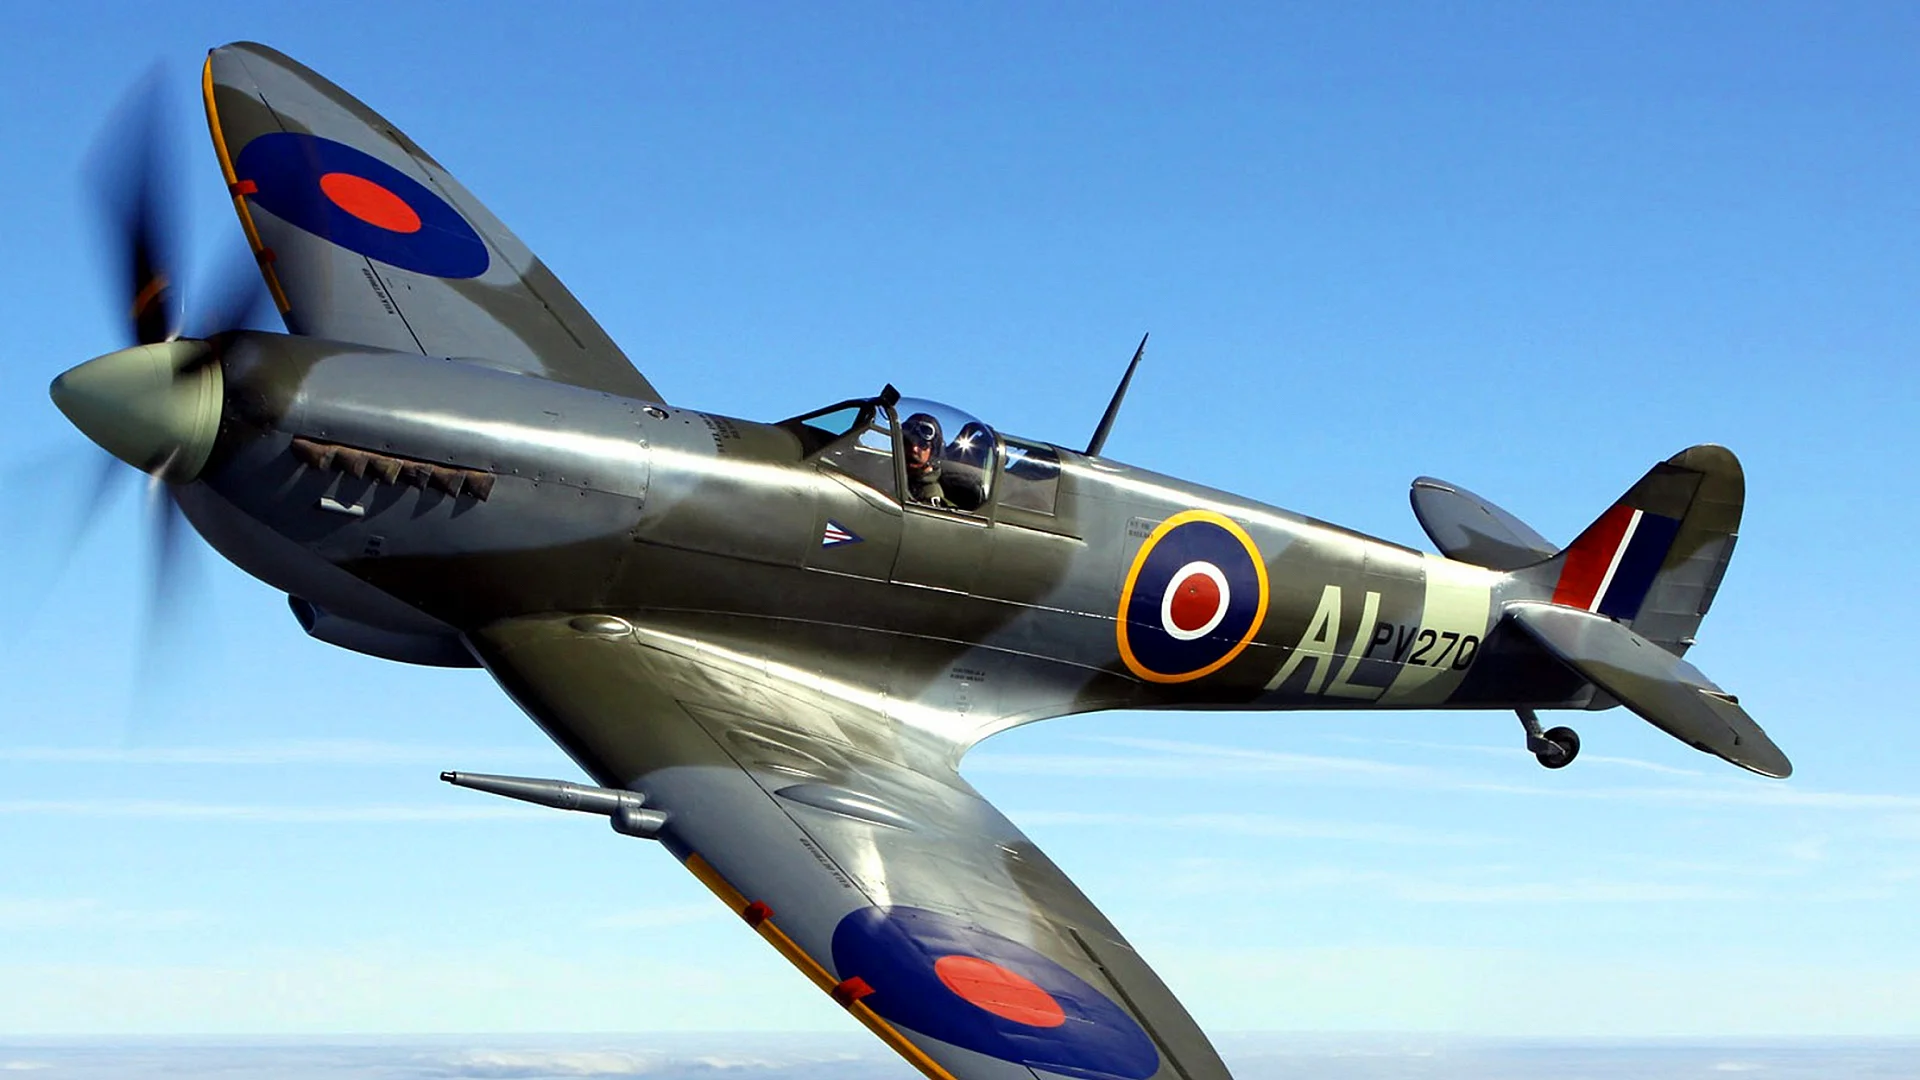 Supermarine Spitfire Mk2 Wallpaper